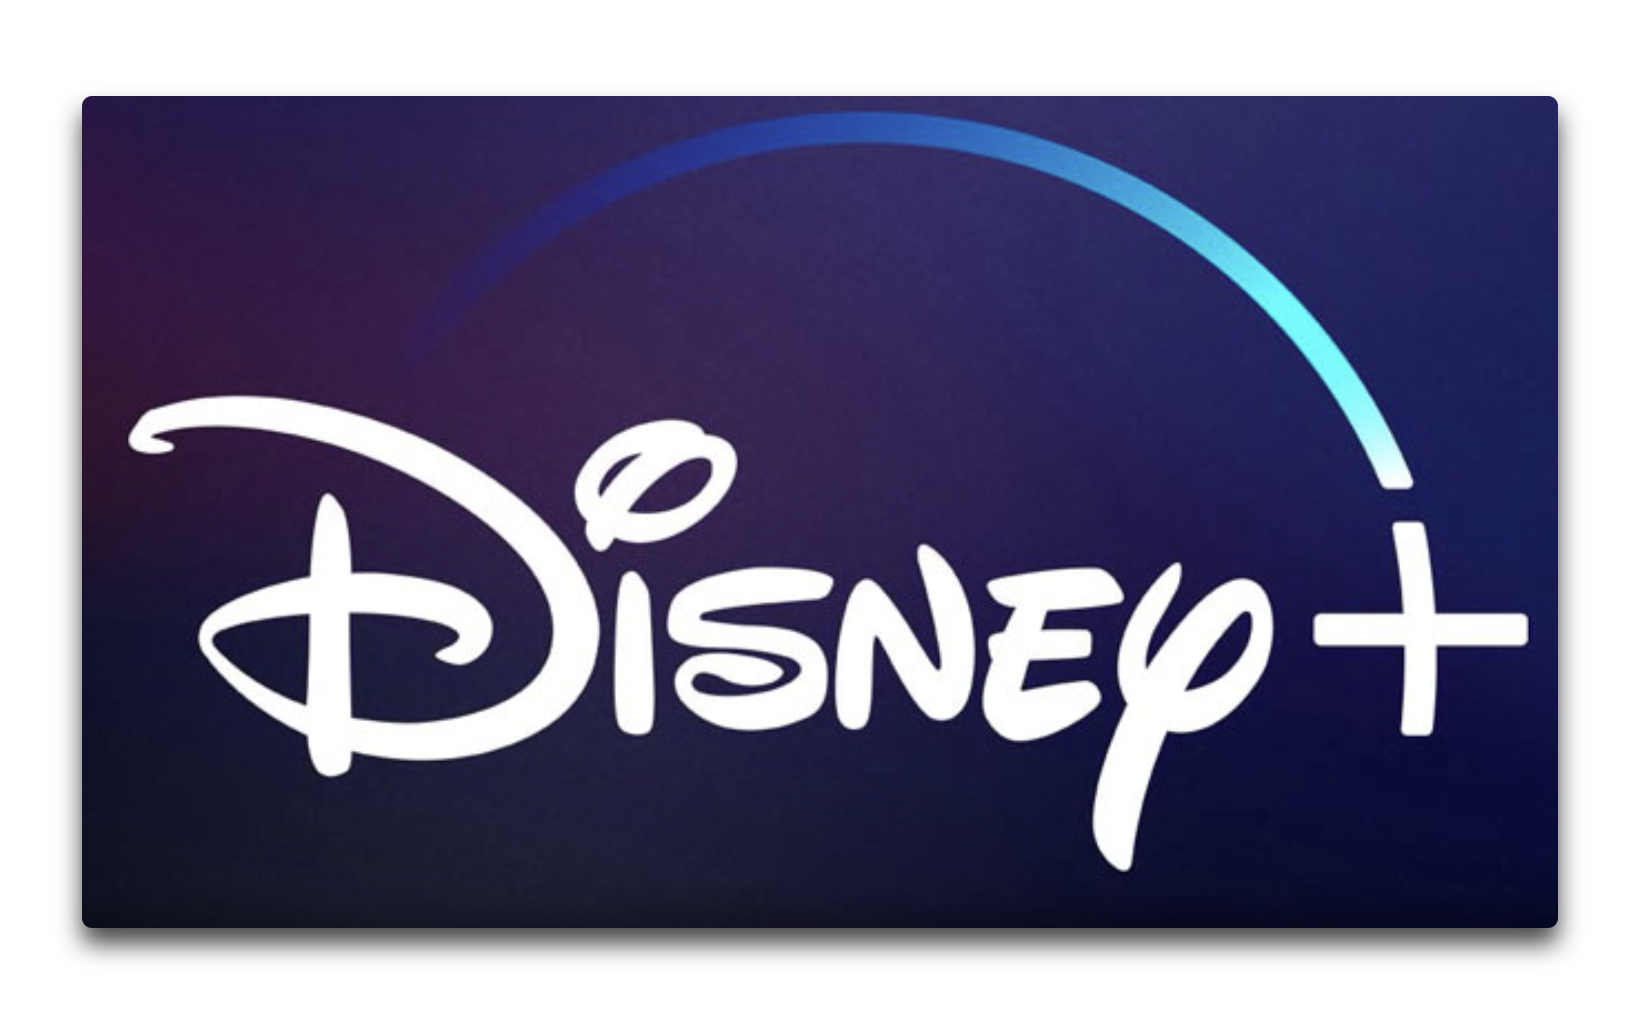 ストリーミングサービス「Disney +」は、サービス開始から約2か月で 2,650万人の加入者を獲得